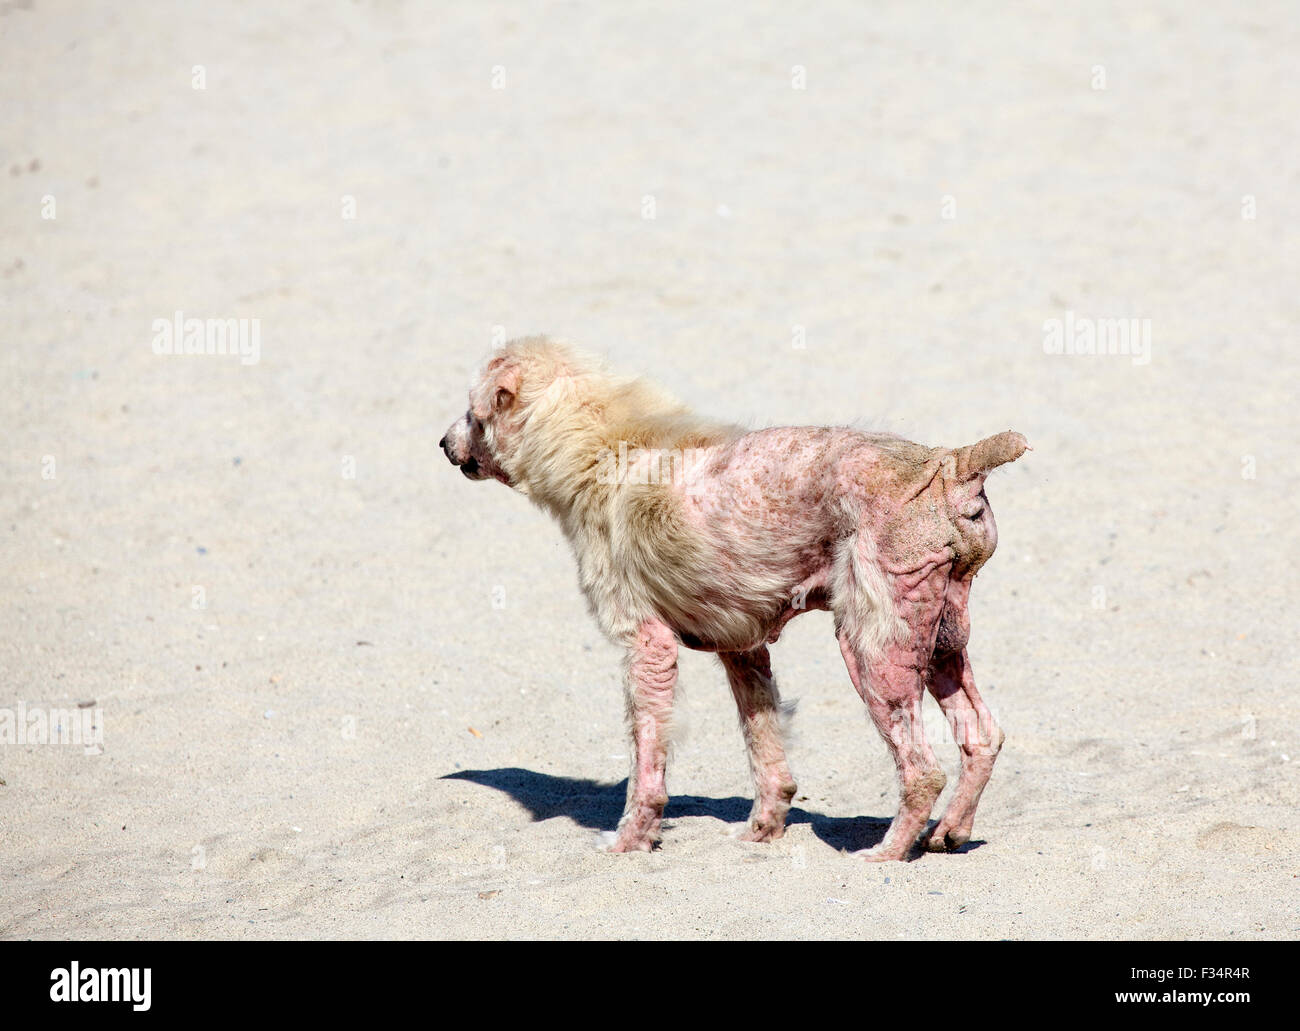 Un perro con un severo caso de sarna, una enfermedad de la piel causada por ácaros parásitos. Foto de stock